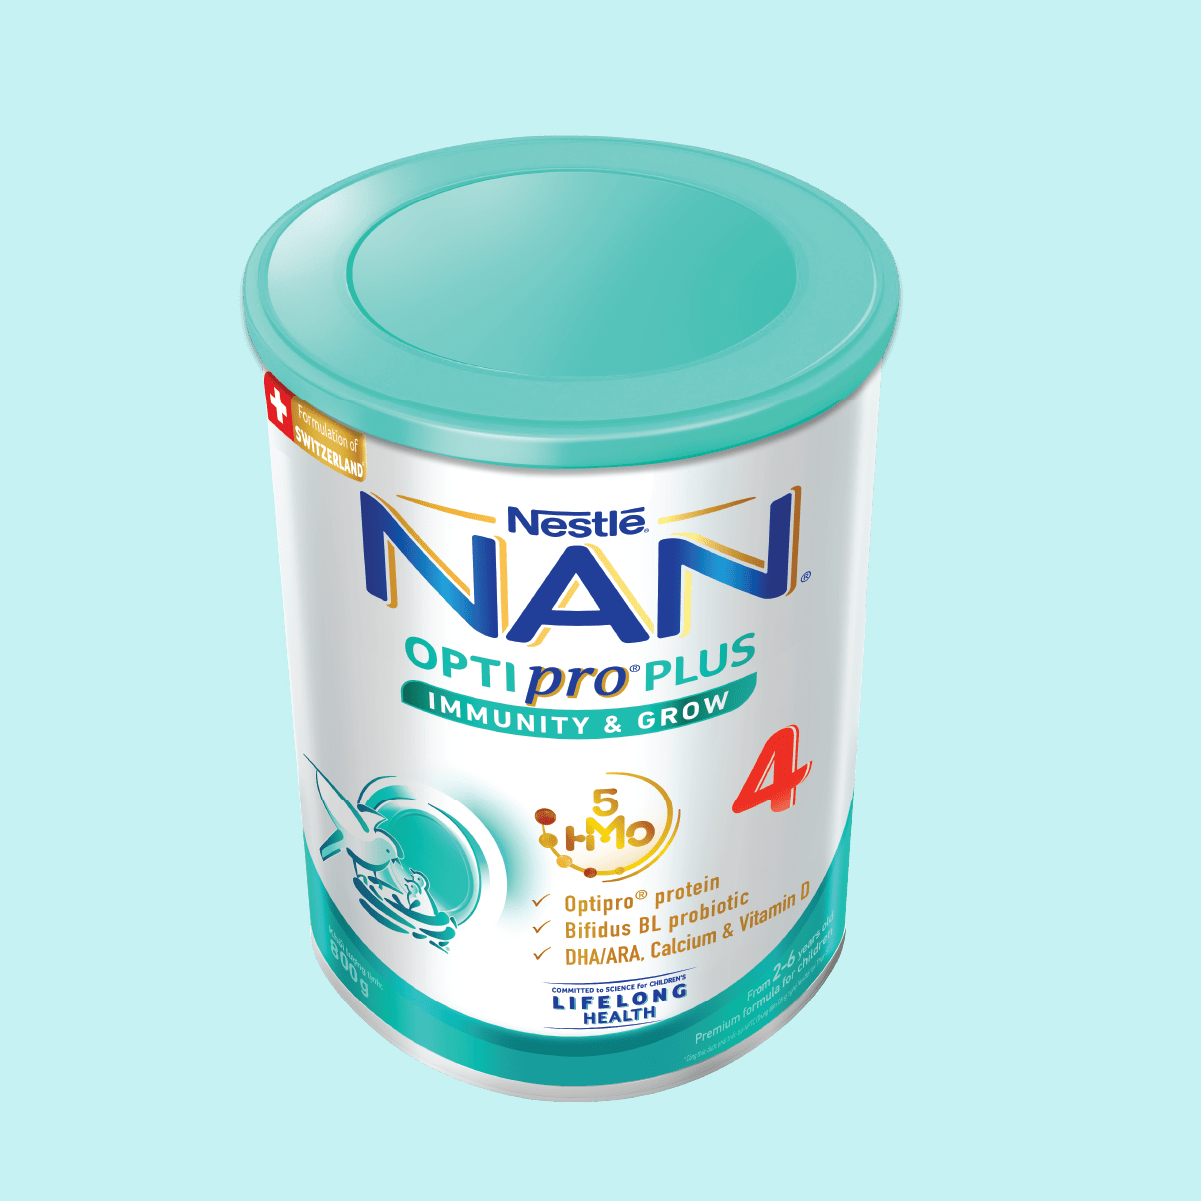 Bộ 2 lon Sữa bột Nestlé NAN OPTIPRO PLUS 4 800g/lon với 5HMO Giúp tiêu hóa tốt + Tăng cường đề kháng + Tặng Bàn học gấp gọn - Bé 2-6 tuổi